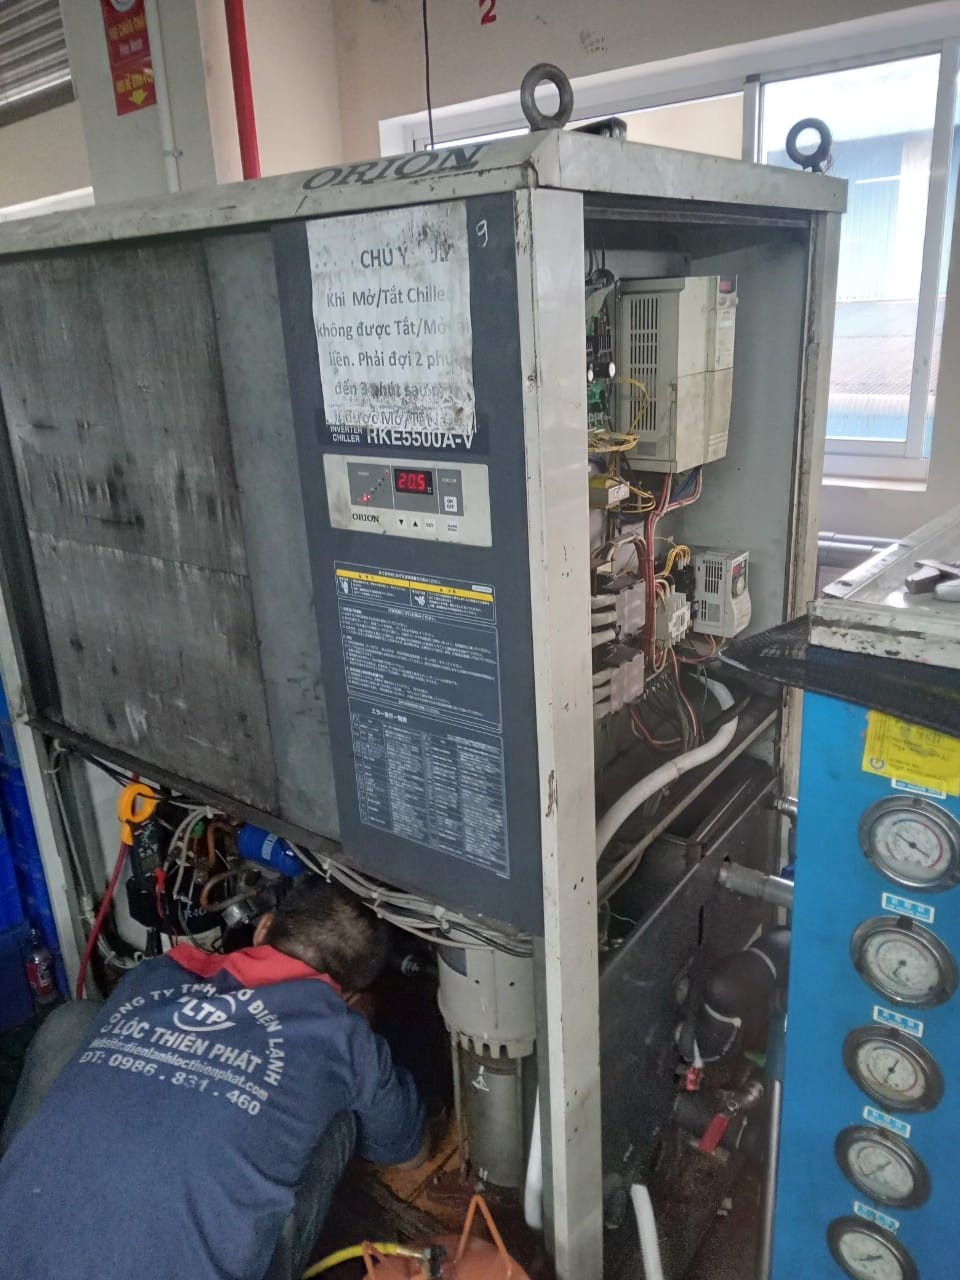 Vệ sinh máy lạnh chiller tại Bình Dương